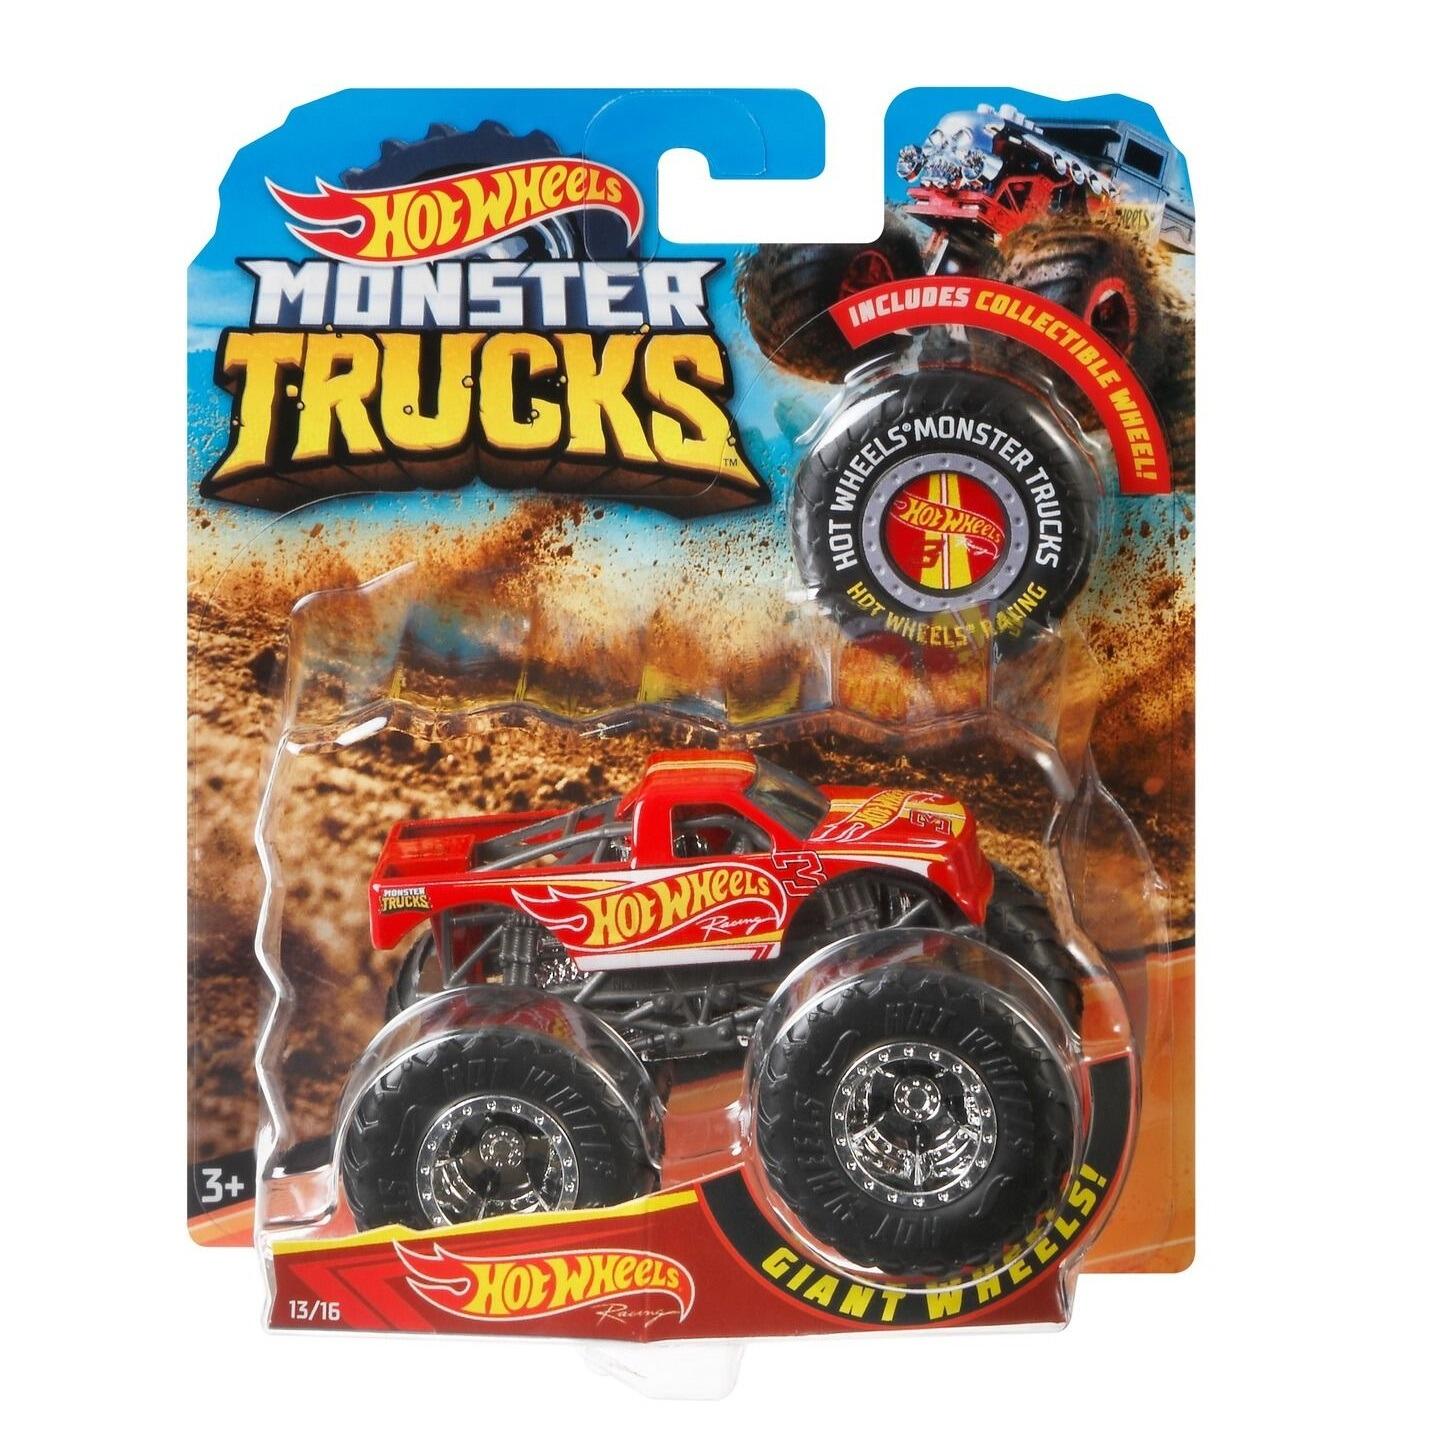 Hot Wheels 1:64 Scale Monster Trucks